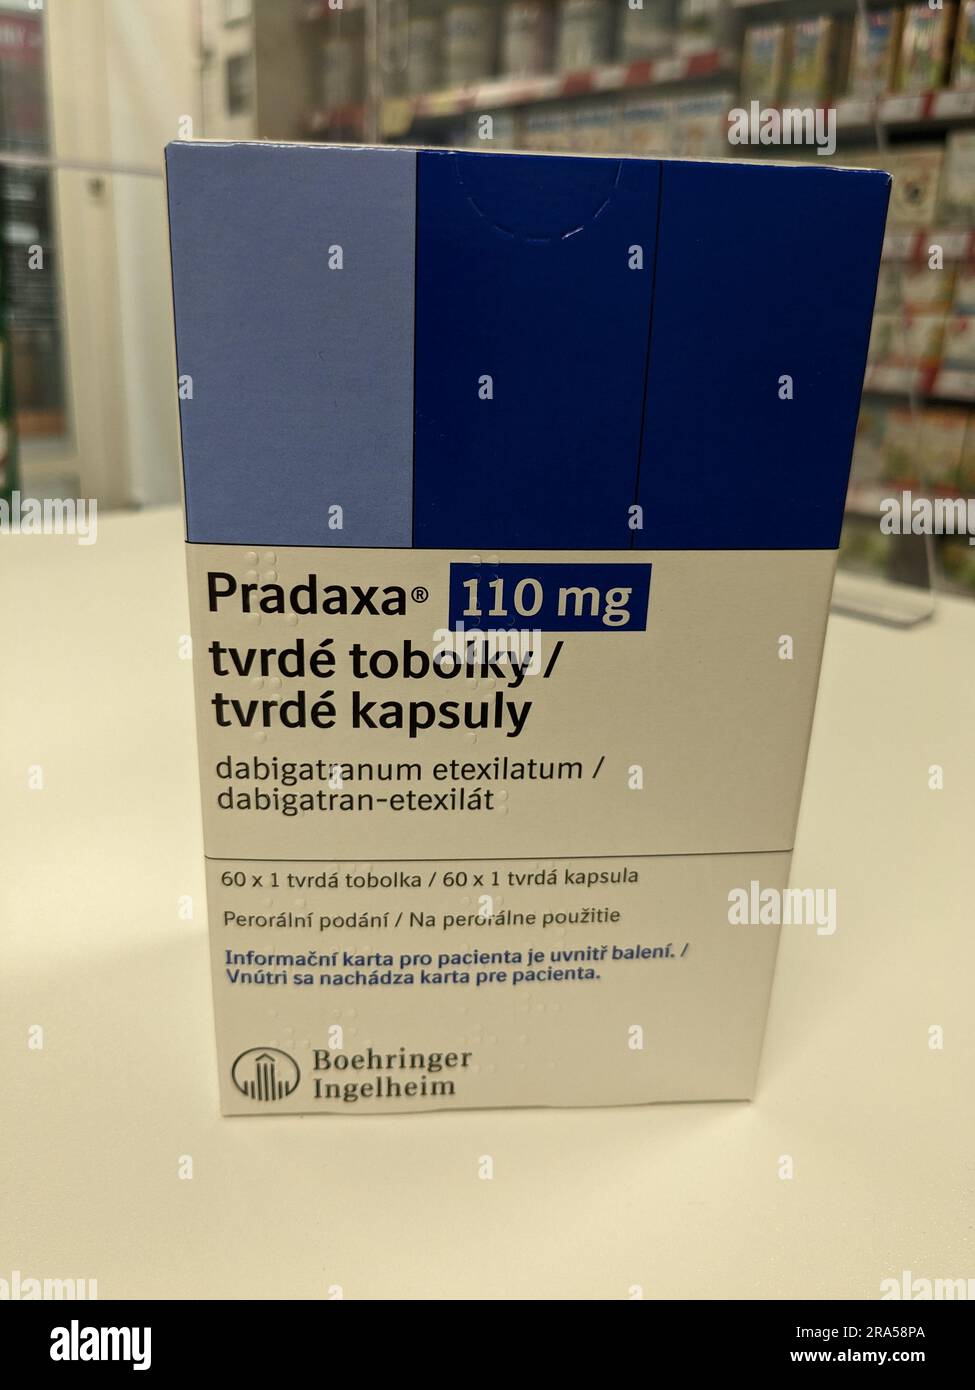 Praga, repubblica Ceca - 22 giugno 2023:Box Pradaxa of tablets.dabigatran as Active Subspance, repubblica Ceca, unione europea Foto Stock